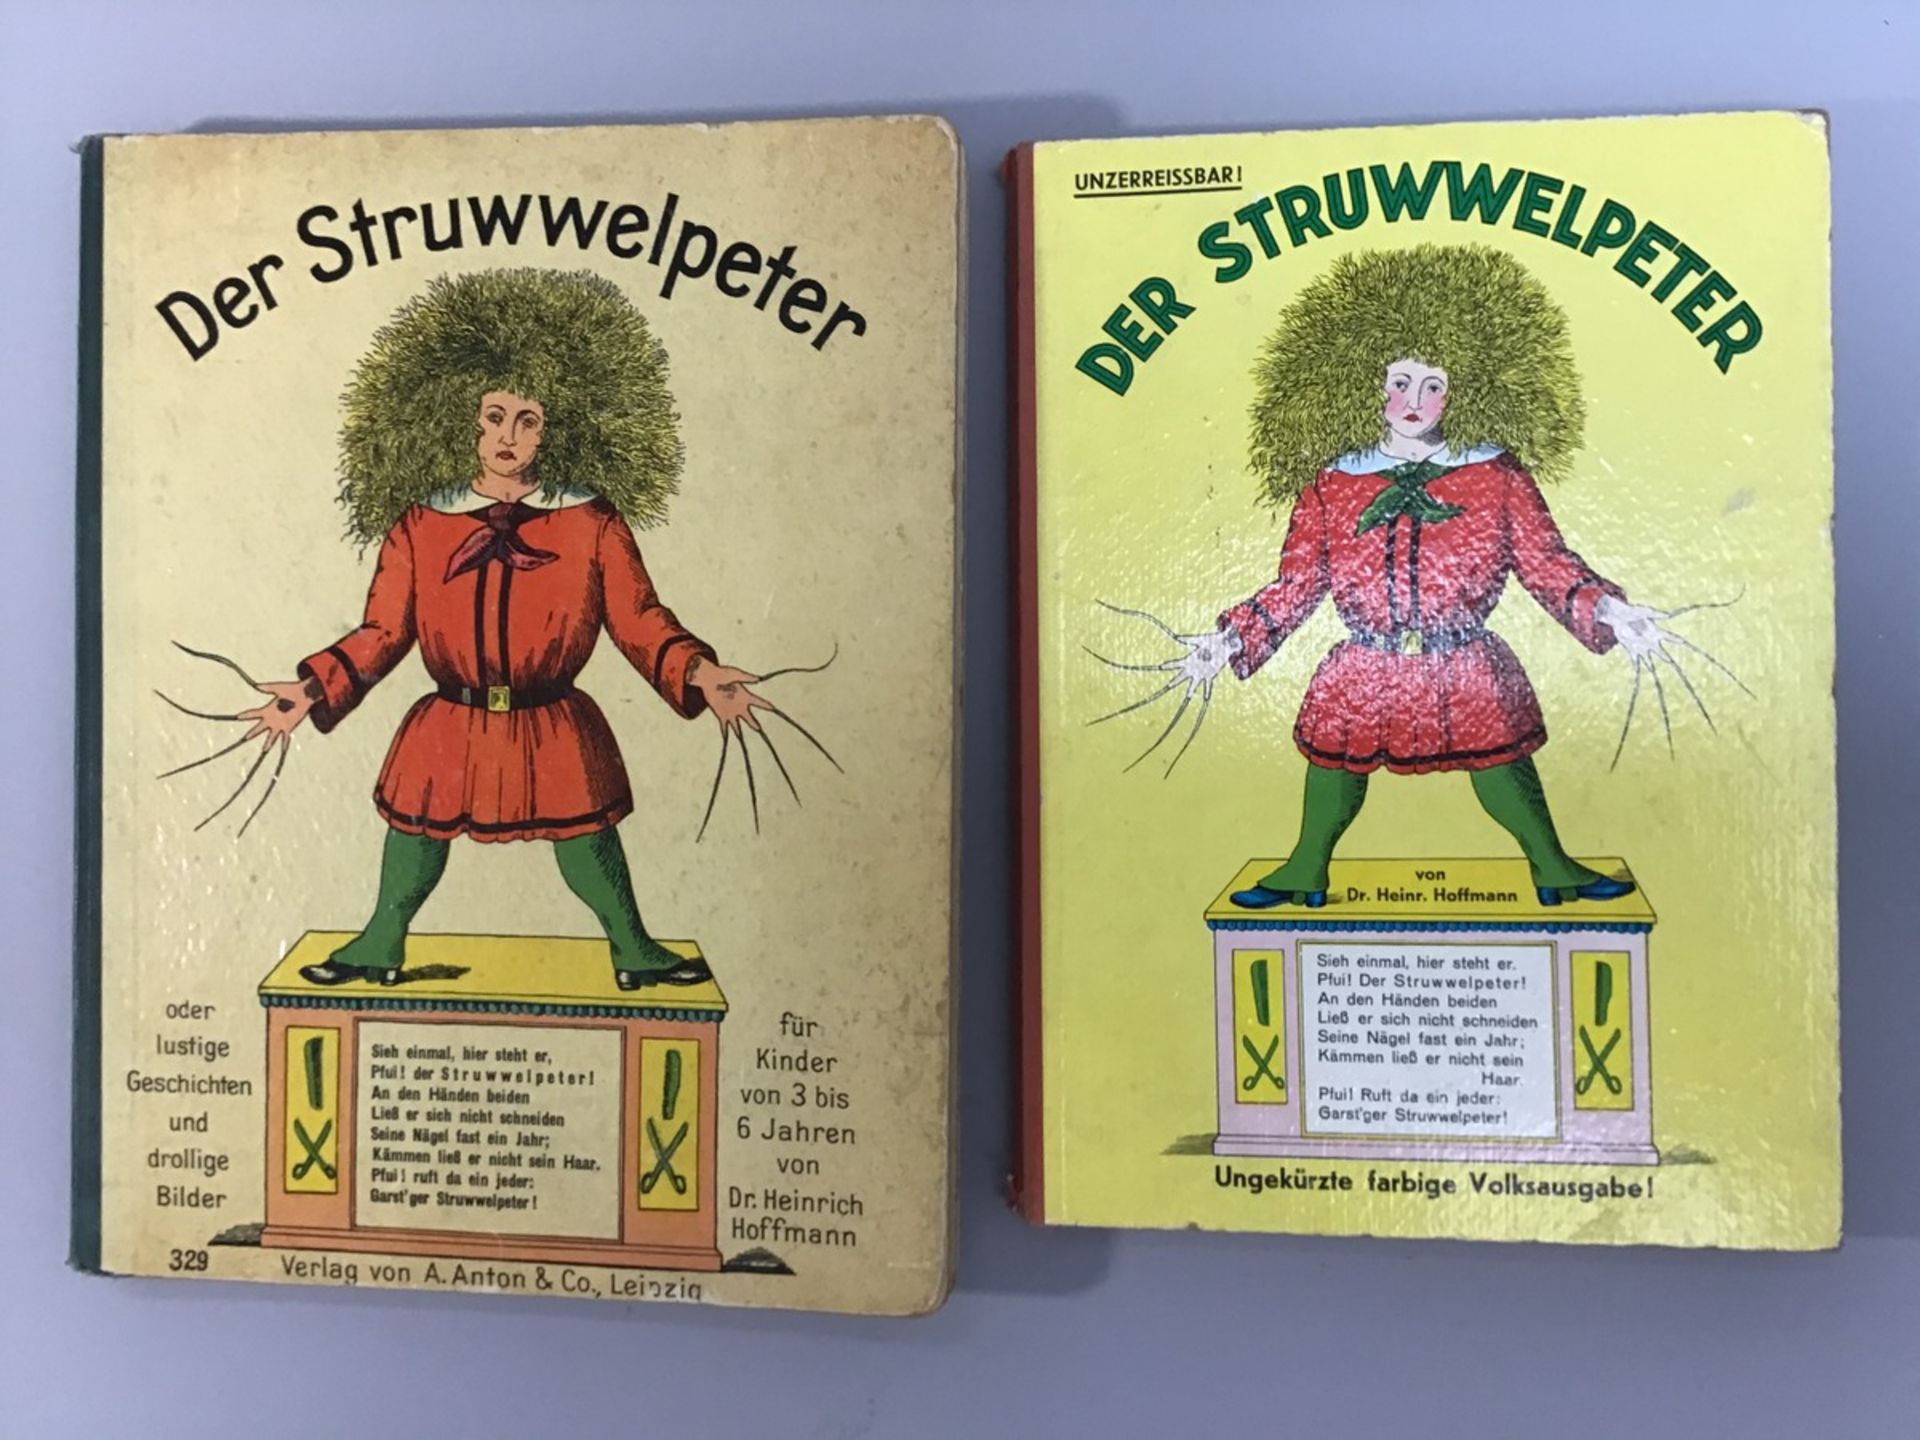 2 Ausgaben "Der Struwwelpeter", 1x Verlag von Anton & Co., Leipzig, 1 x unzerreissbare,